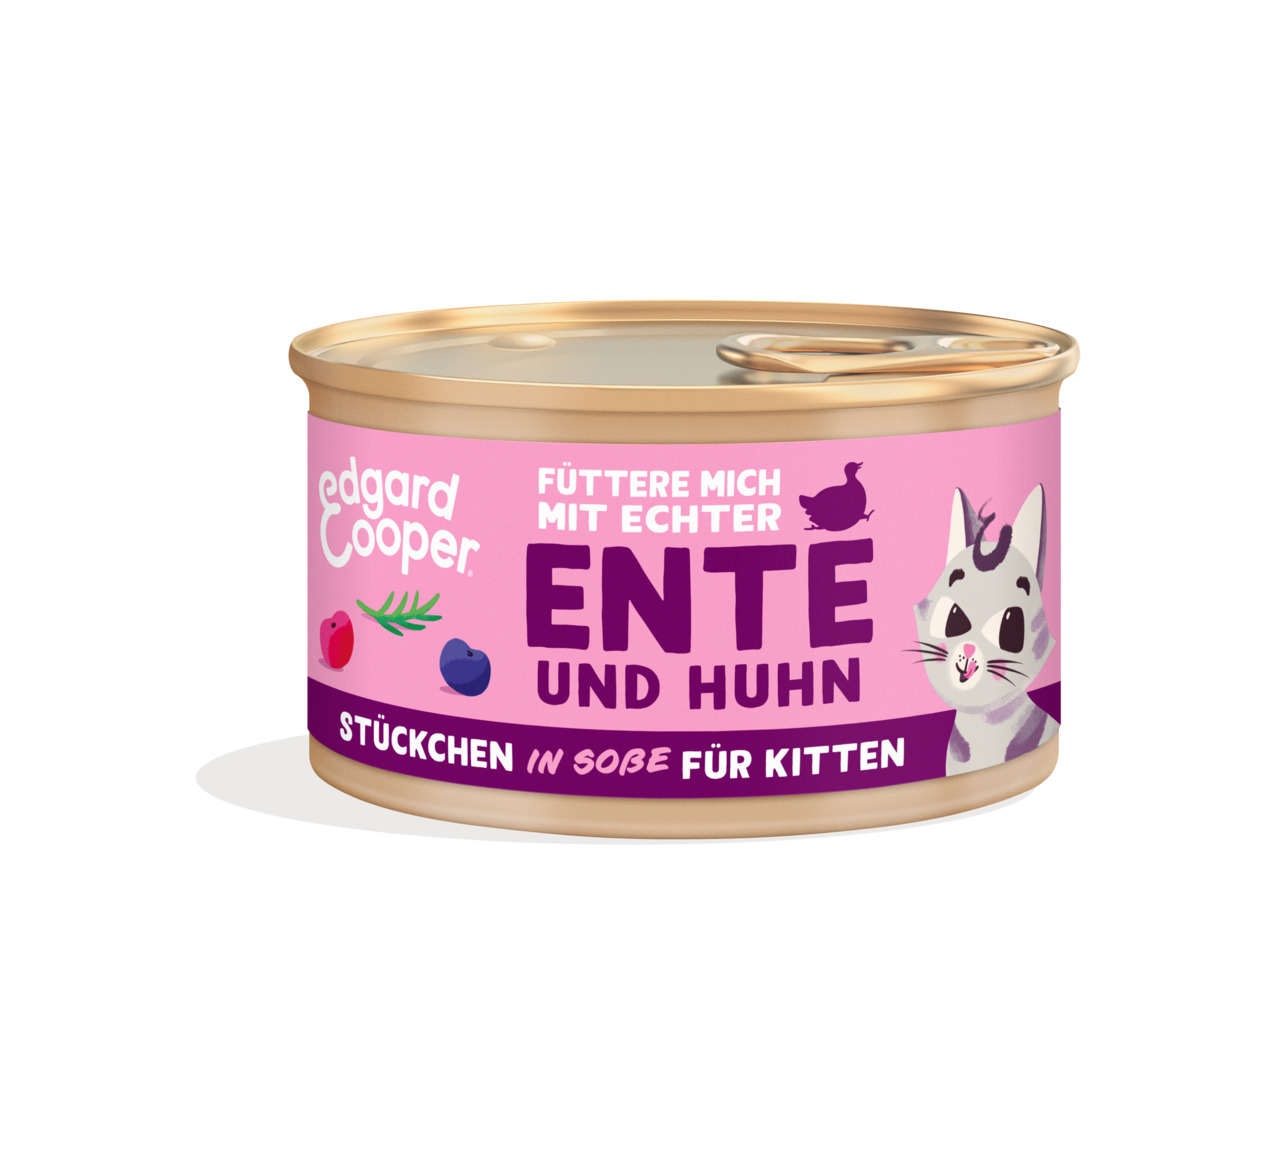 Edgard & Cooper Kitten Ente & Huhn Stückchen in Soße Katzen Nassfutter 85 g